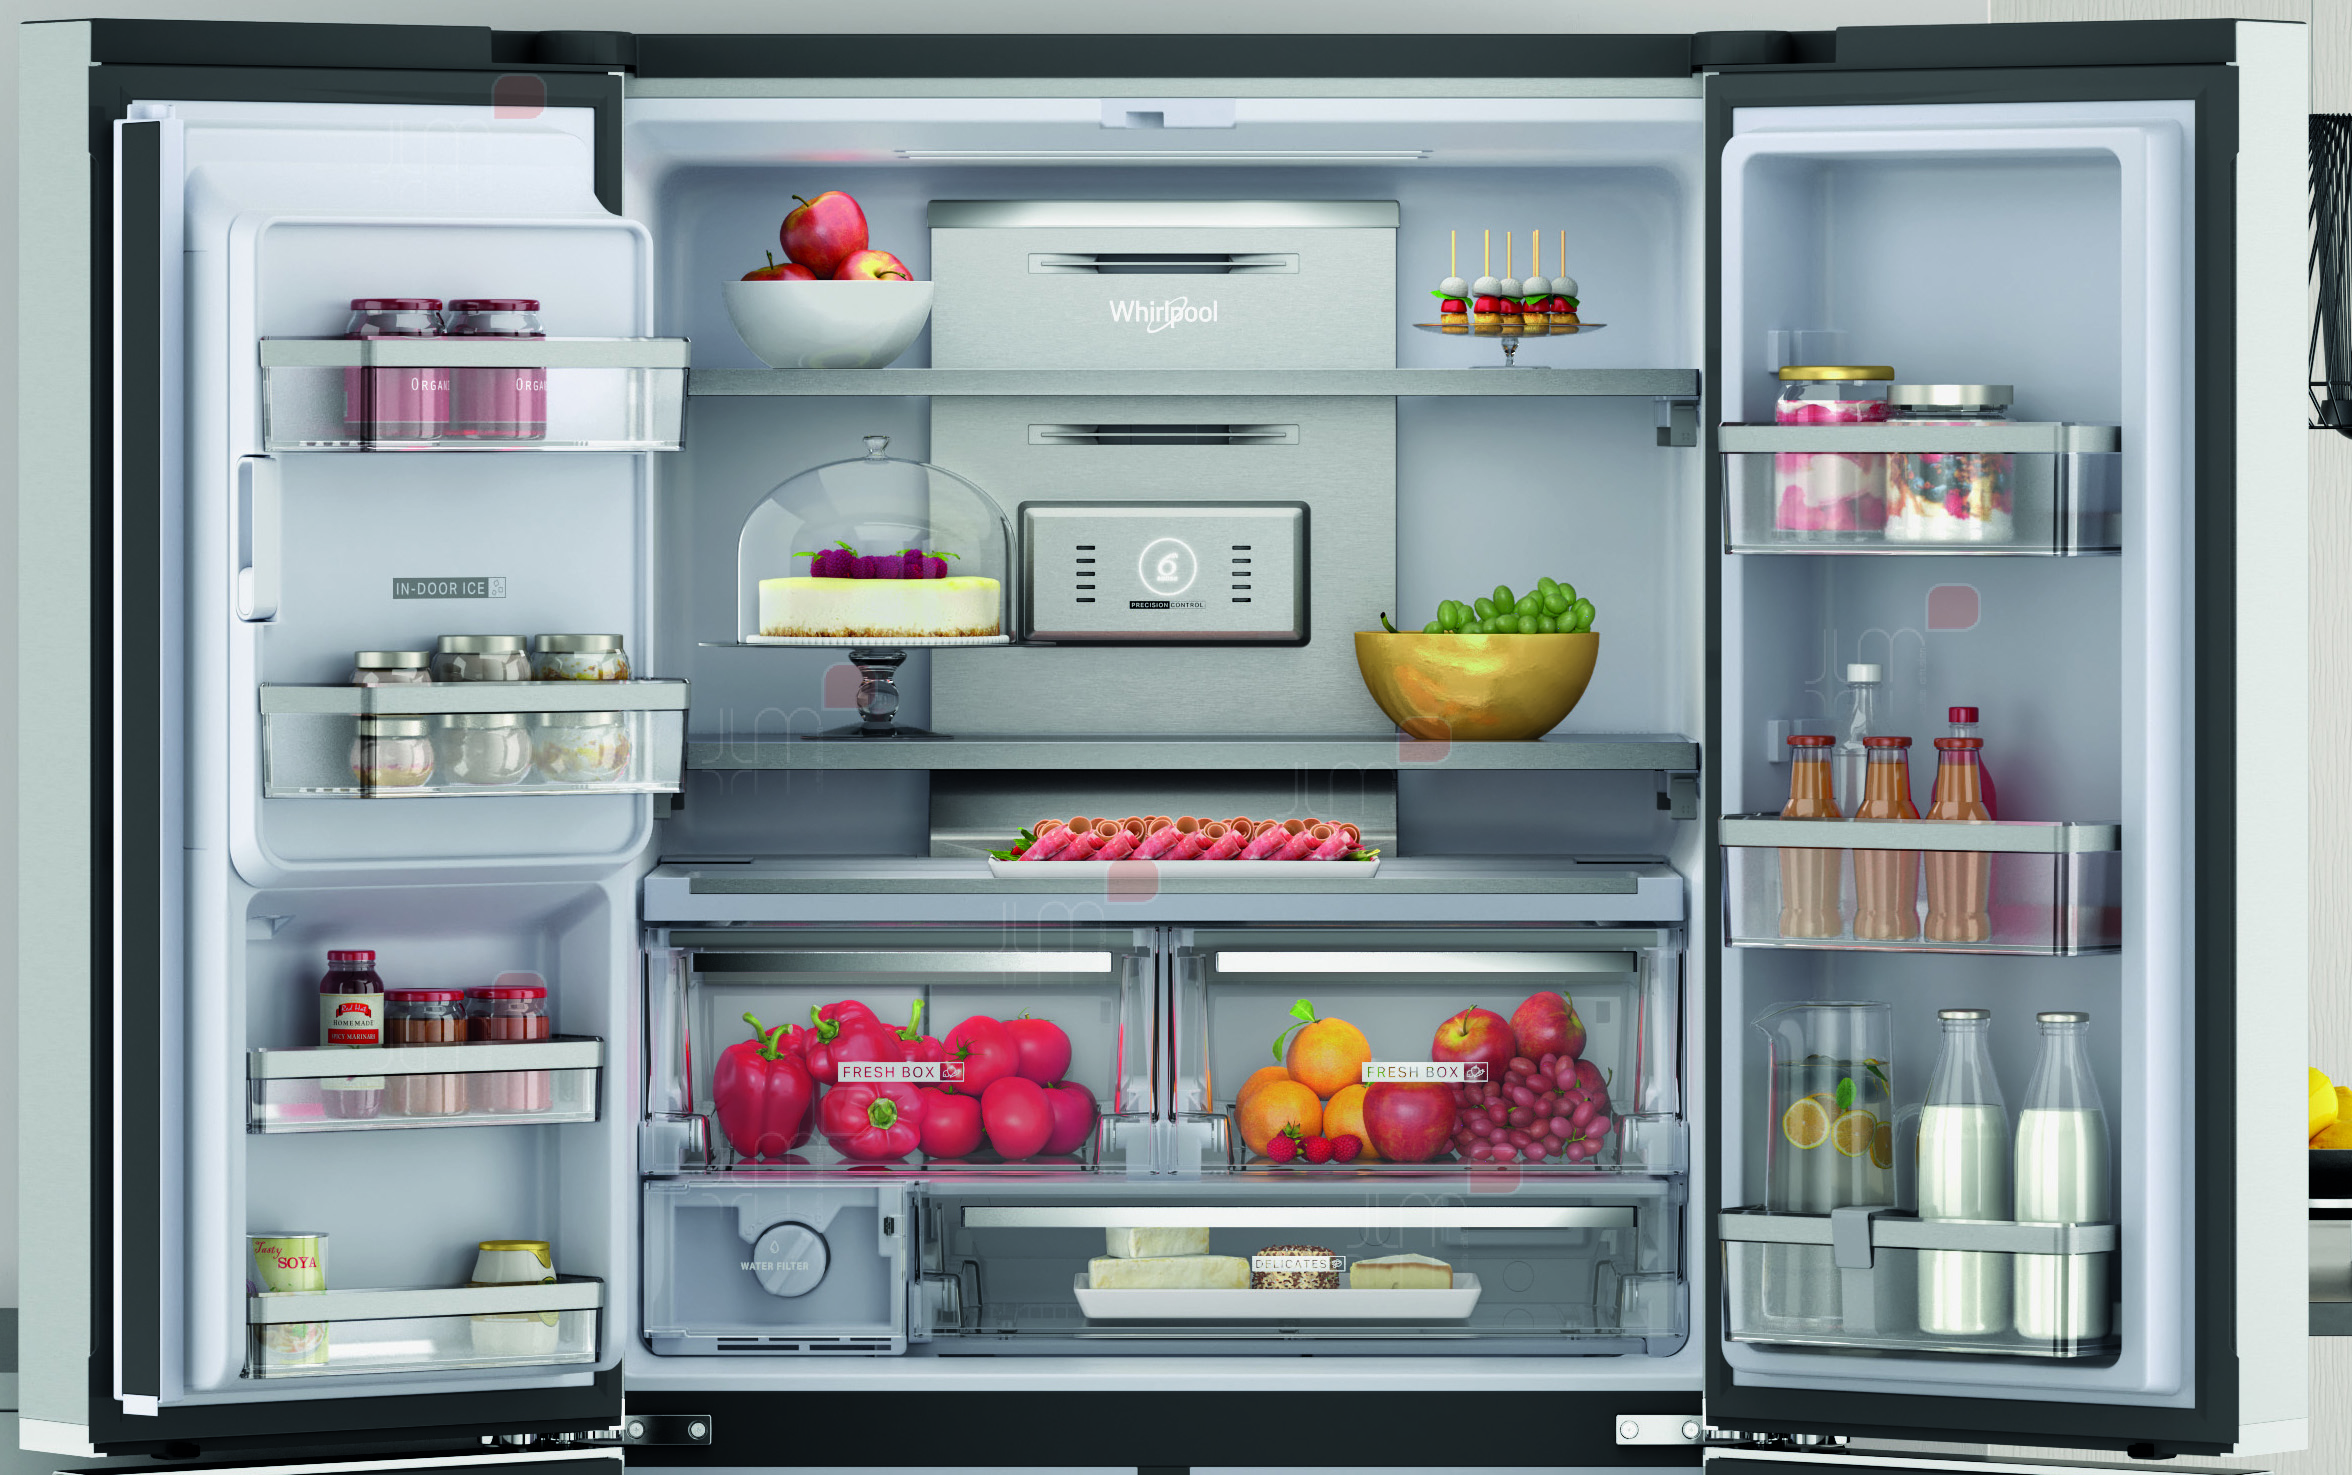 Réfrigerateur américain avec fabrique de glaçons automatique